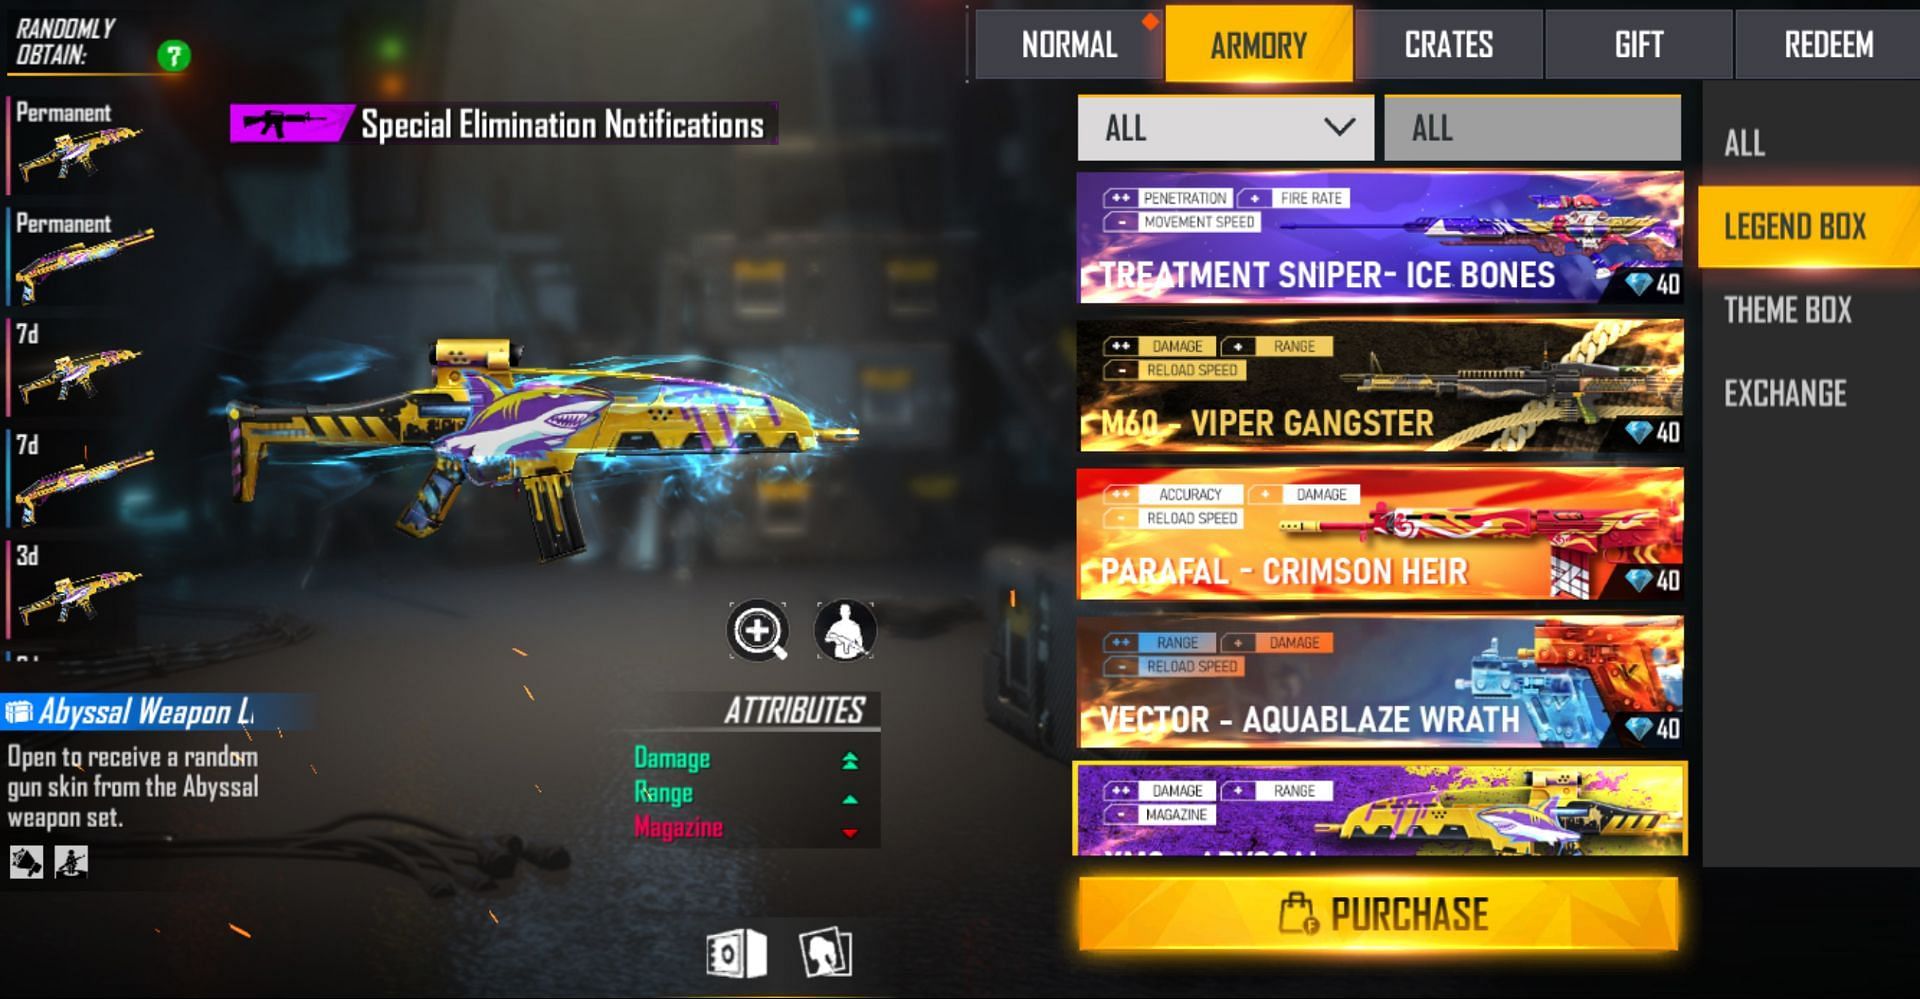 Legendary gun skins are available through gun crates (Image via Garena)